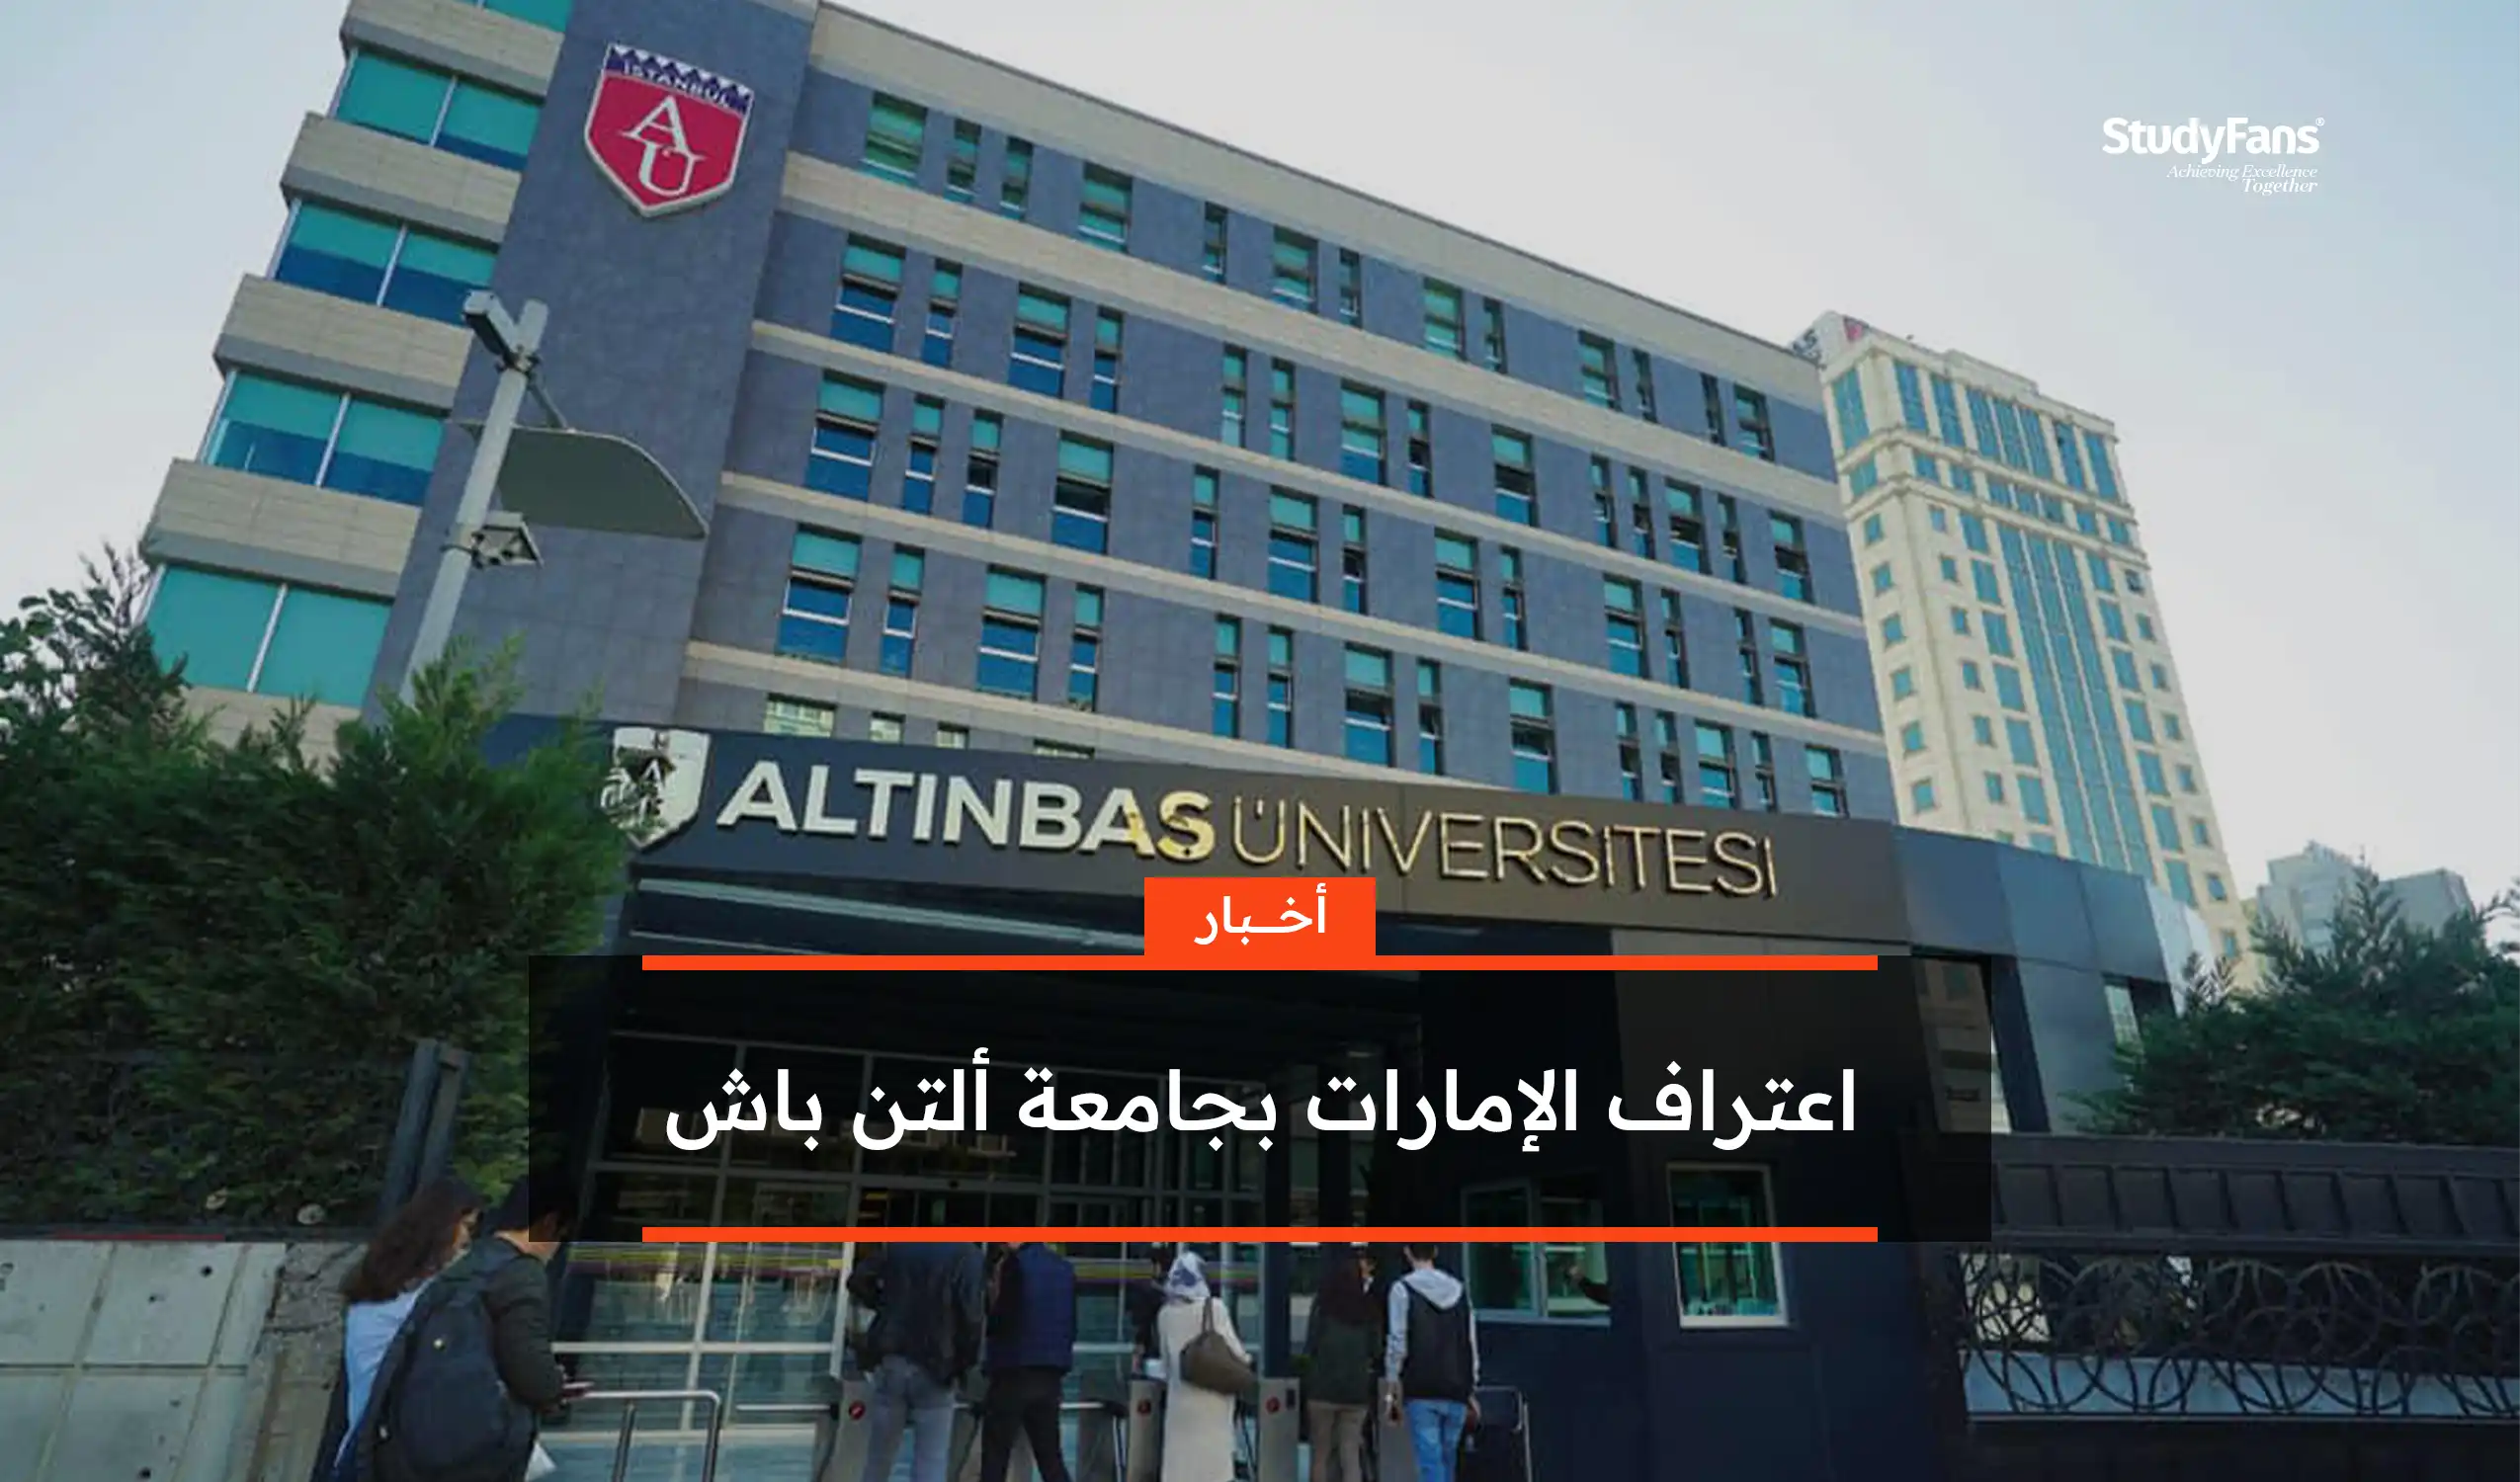 اعتراف دولة الإمارات بجامعة ألتن باش التركية